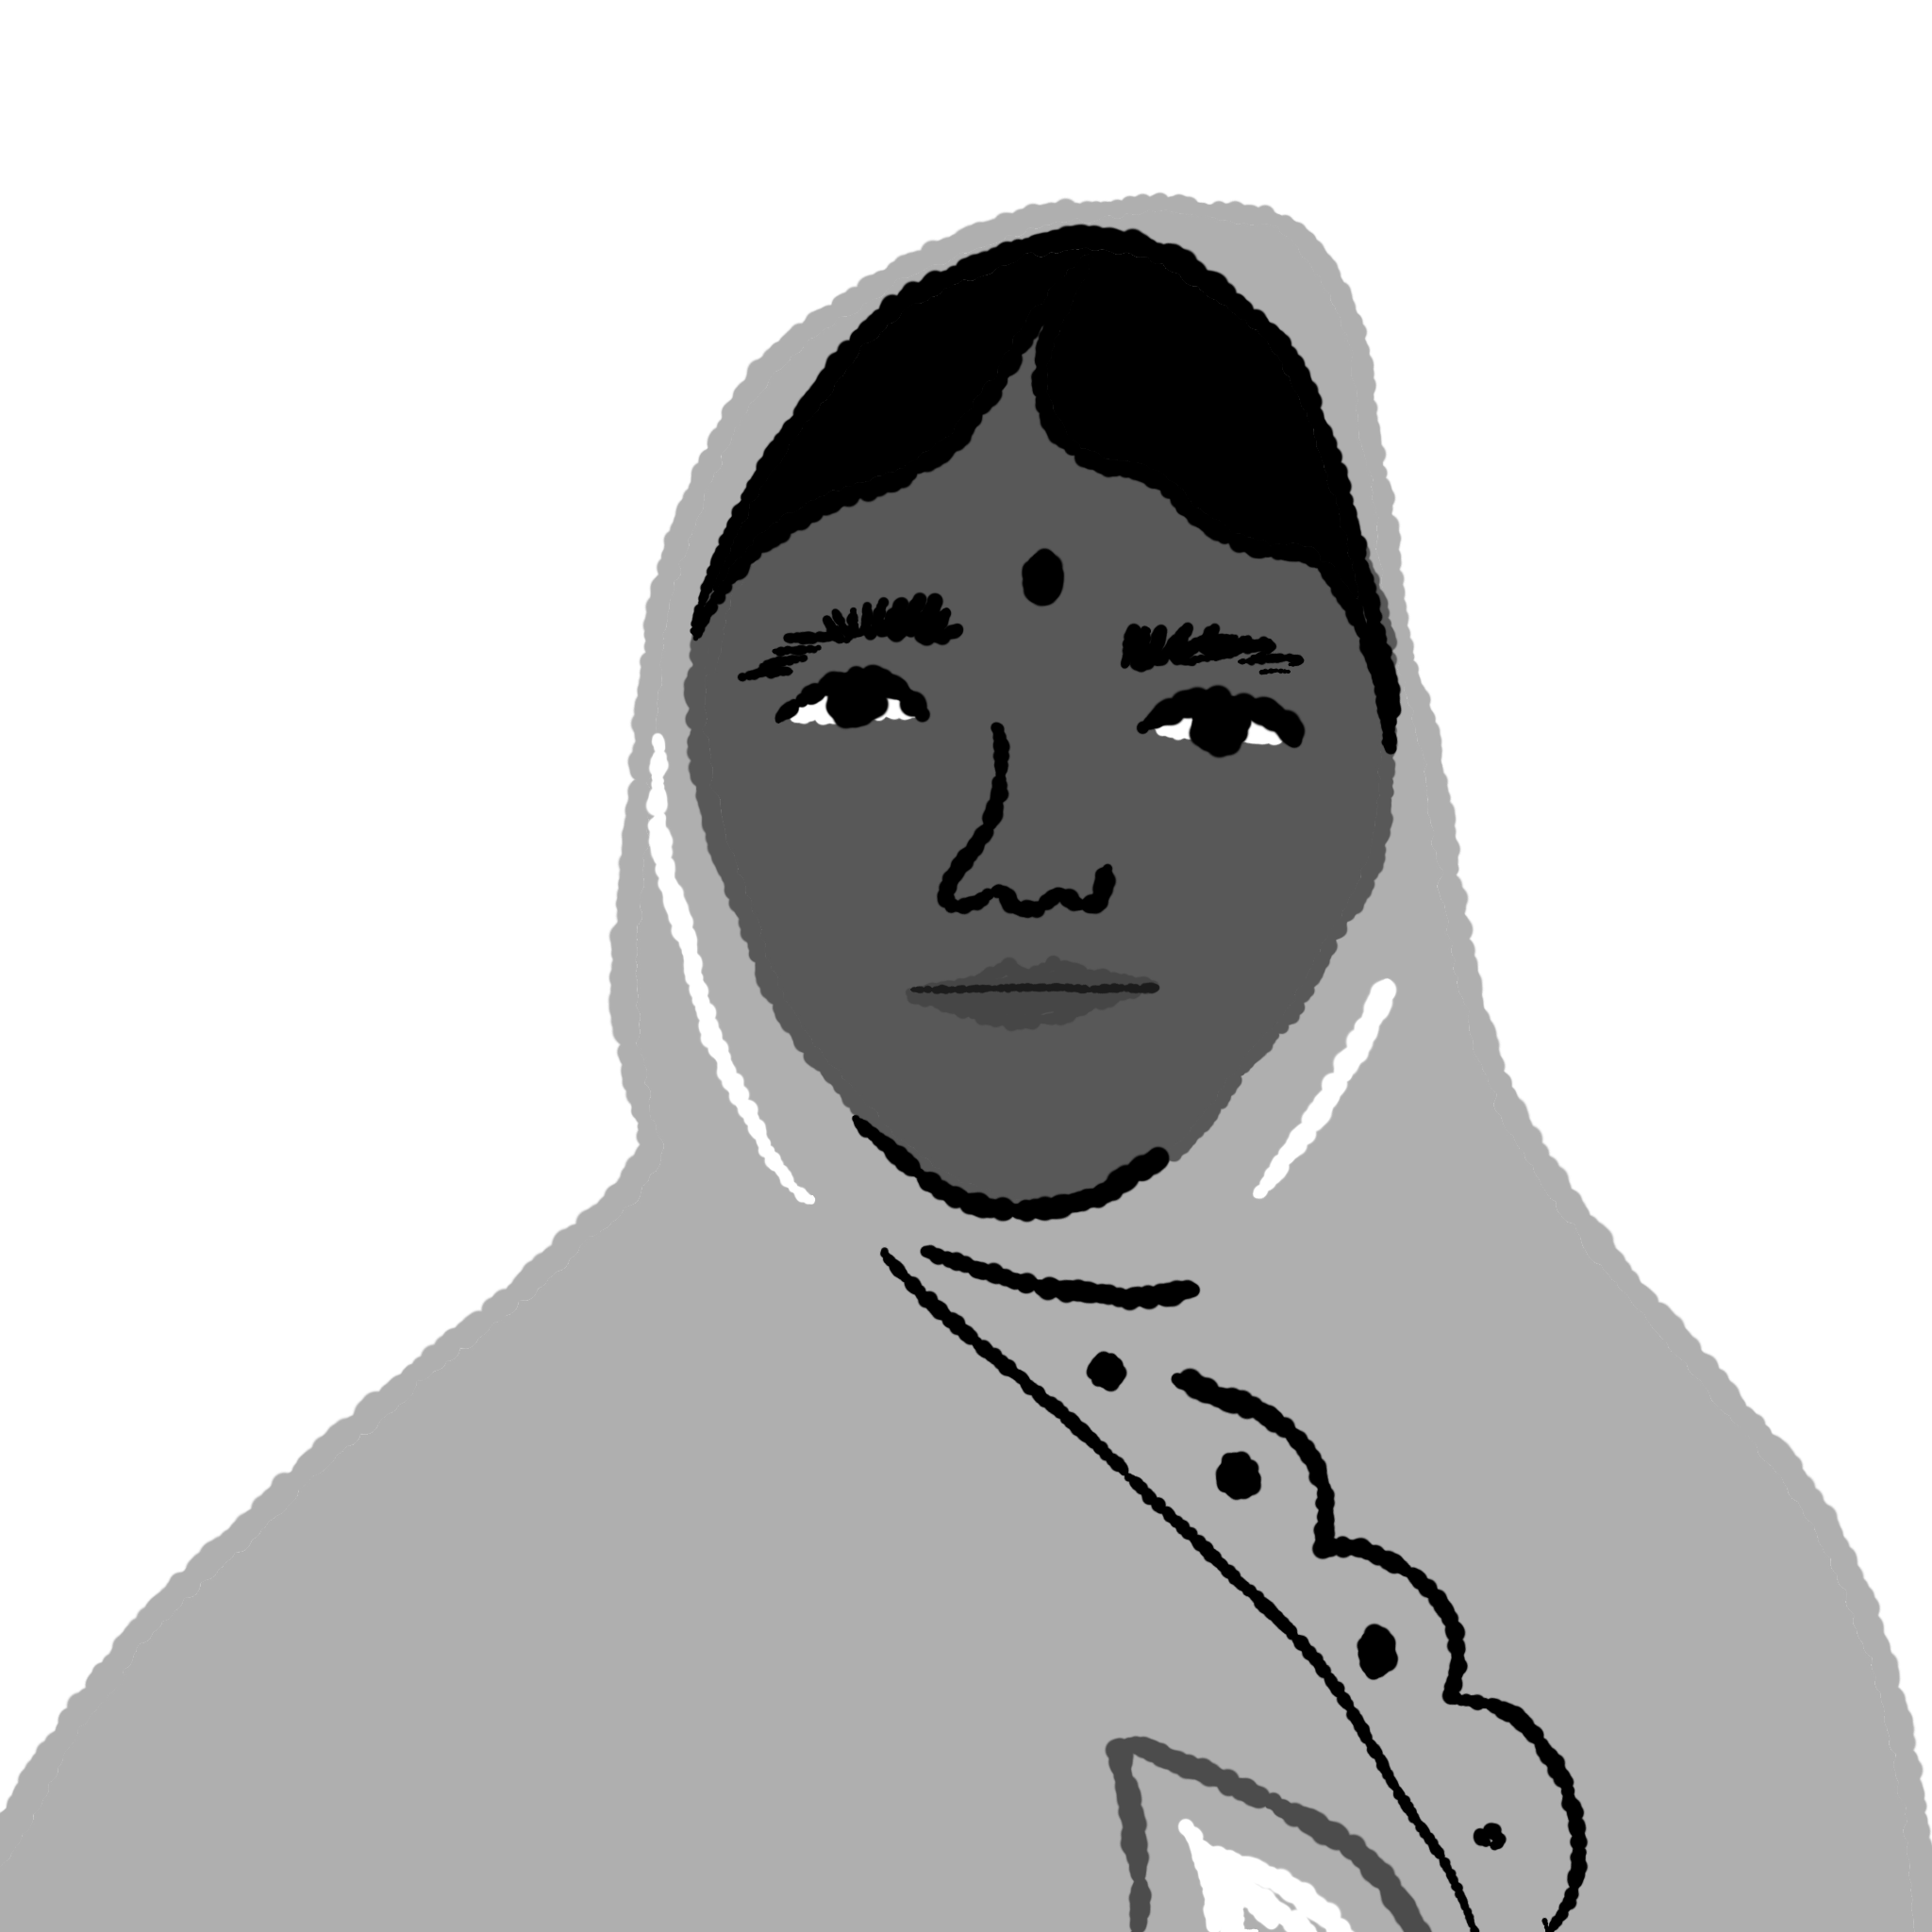 Illustration of woman